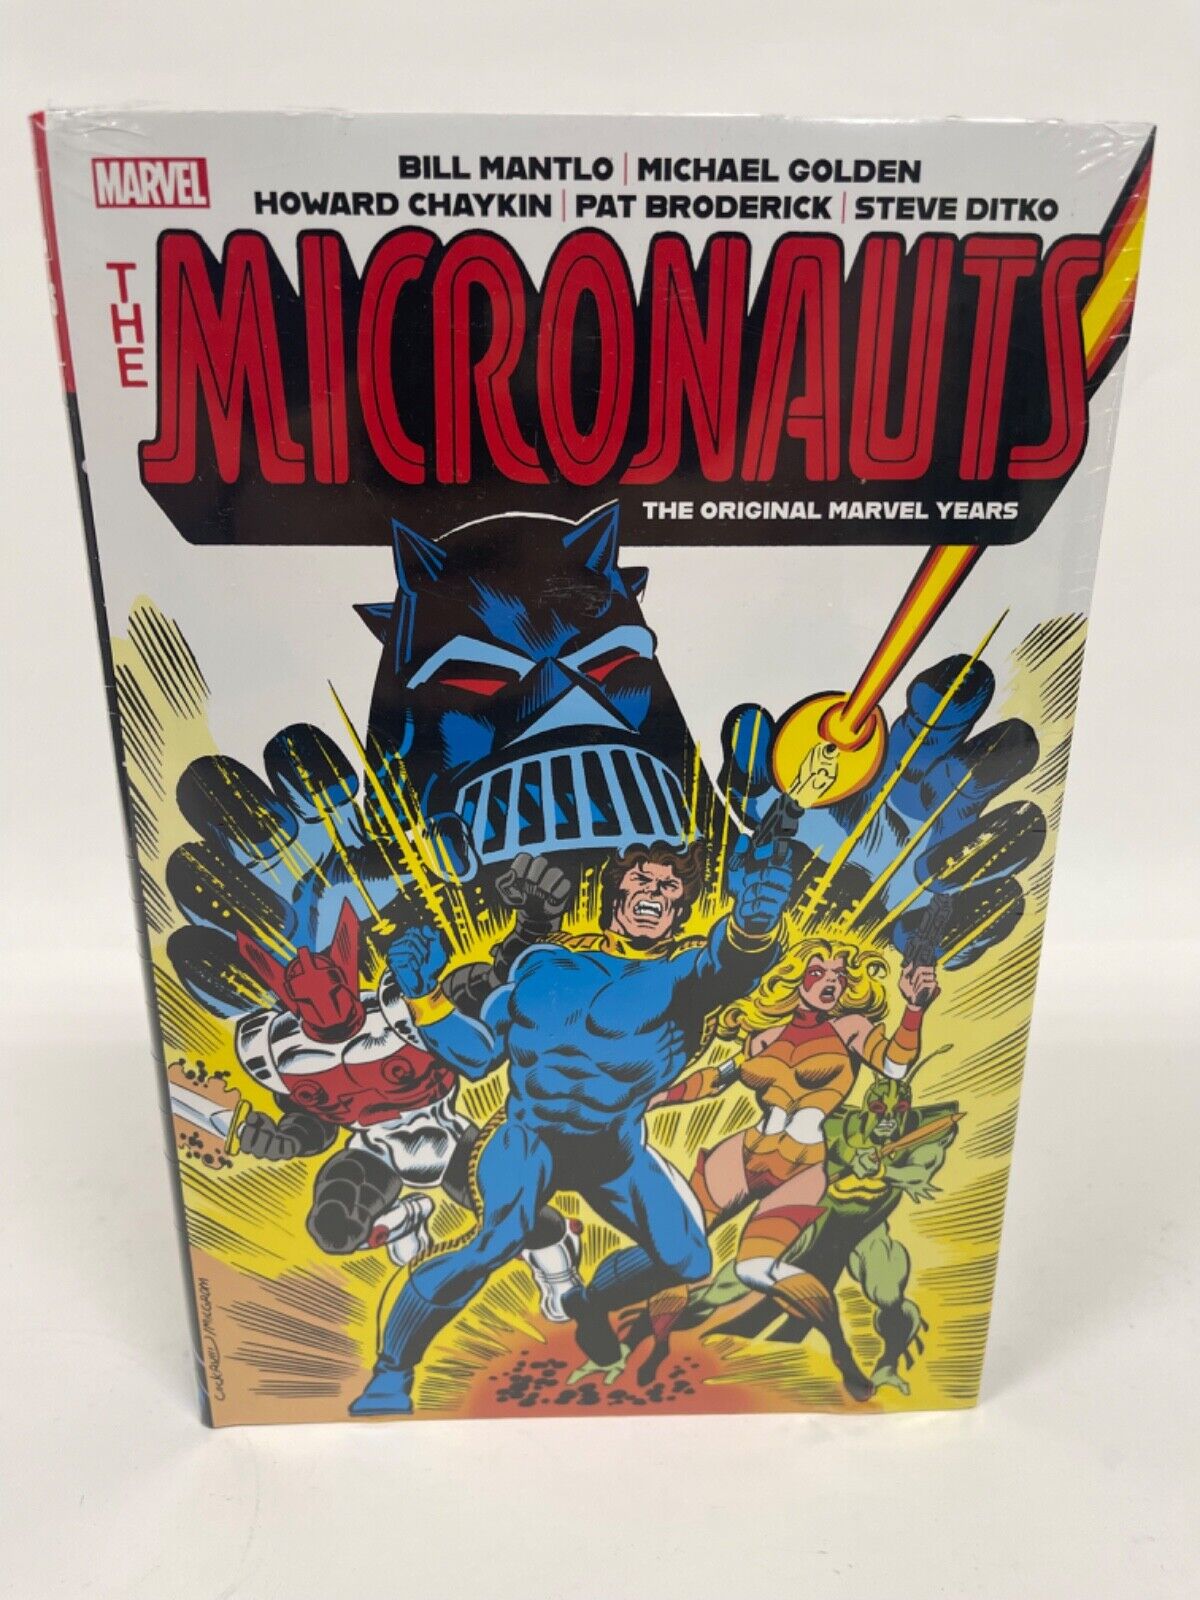 Micronauts Original Marvel Years Omnibus Vol 1 COCKRUM COVER New HC Comics